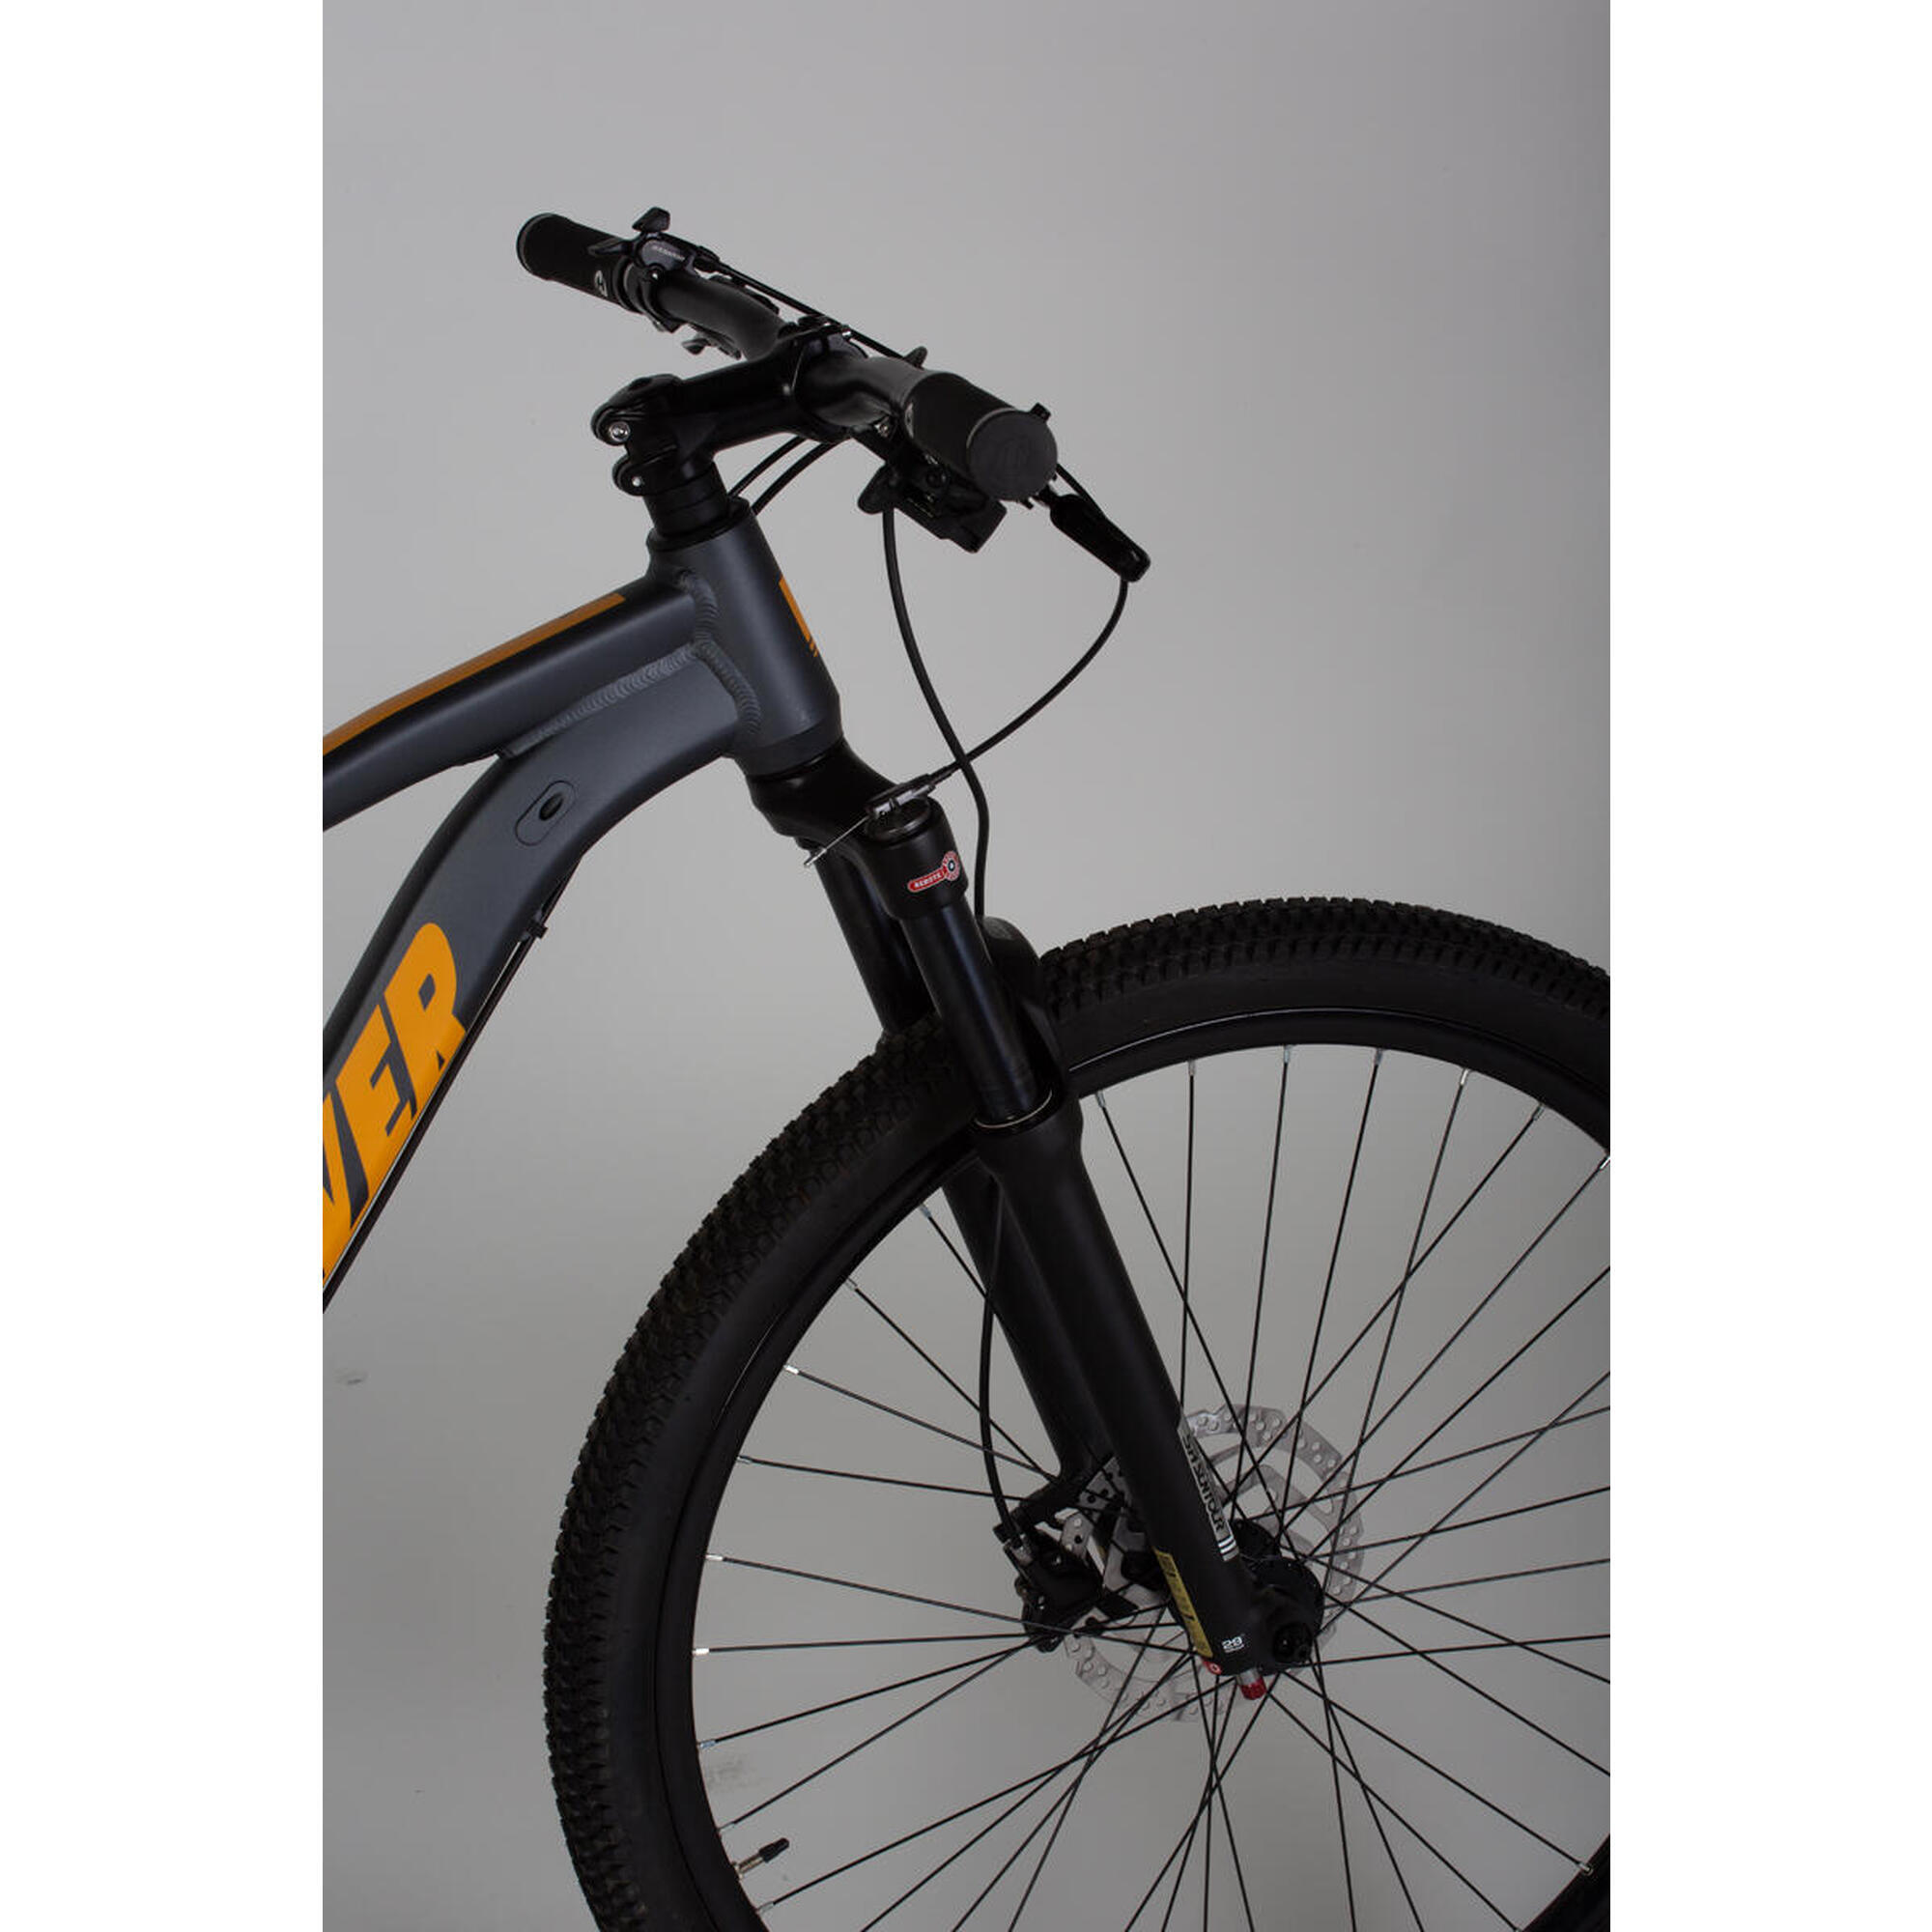 Bicicleta Nv 911 con ruedas de 29″, 11 velocidades, freno de disco hidráulico